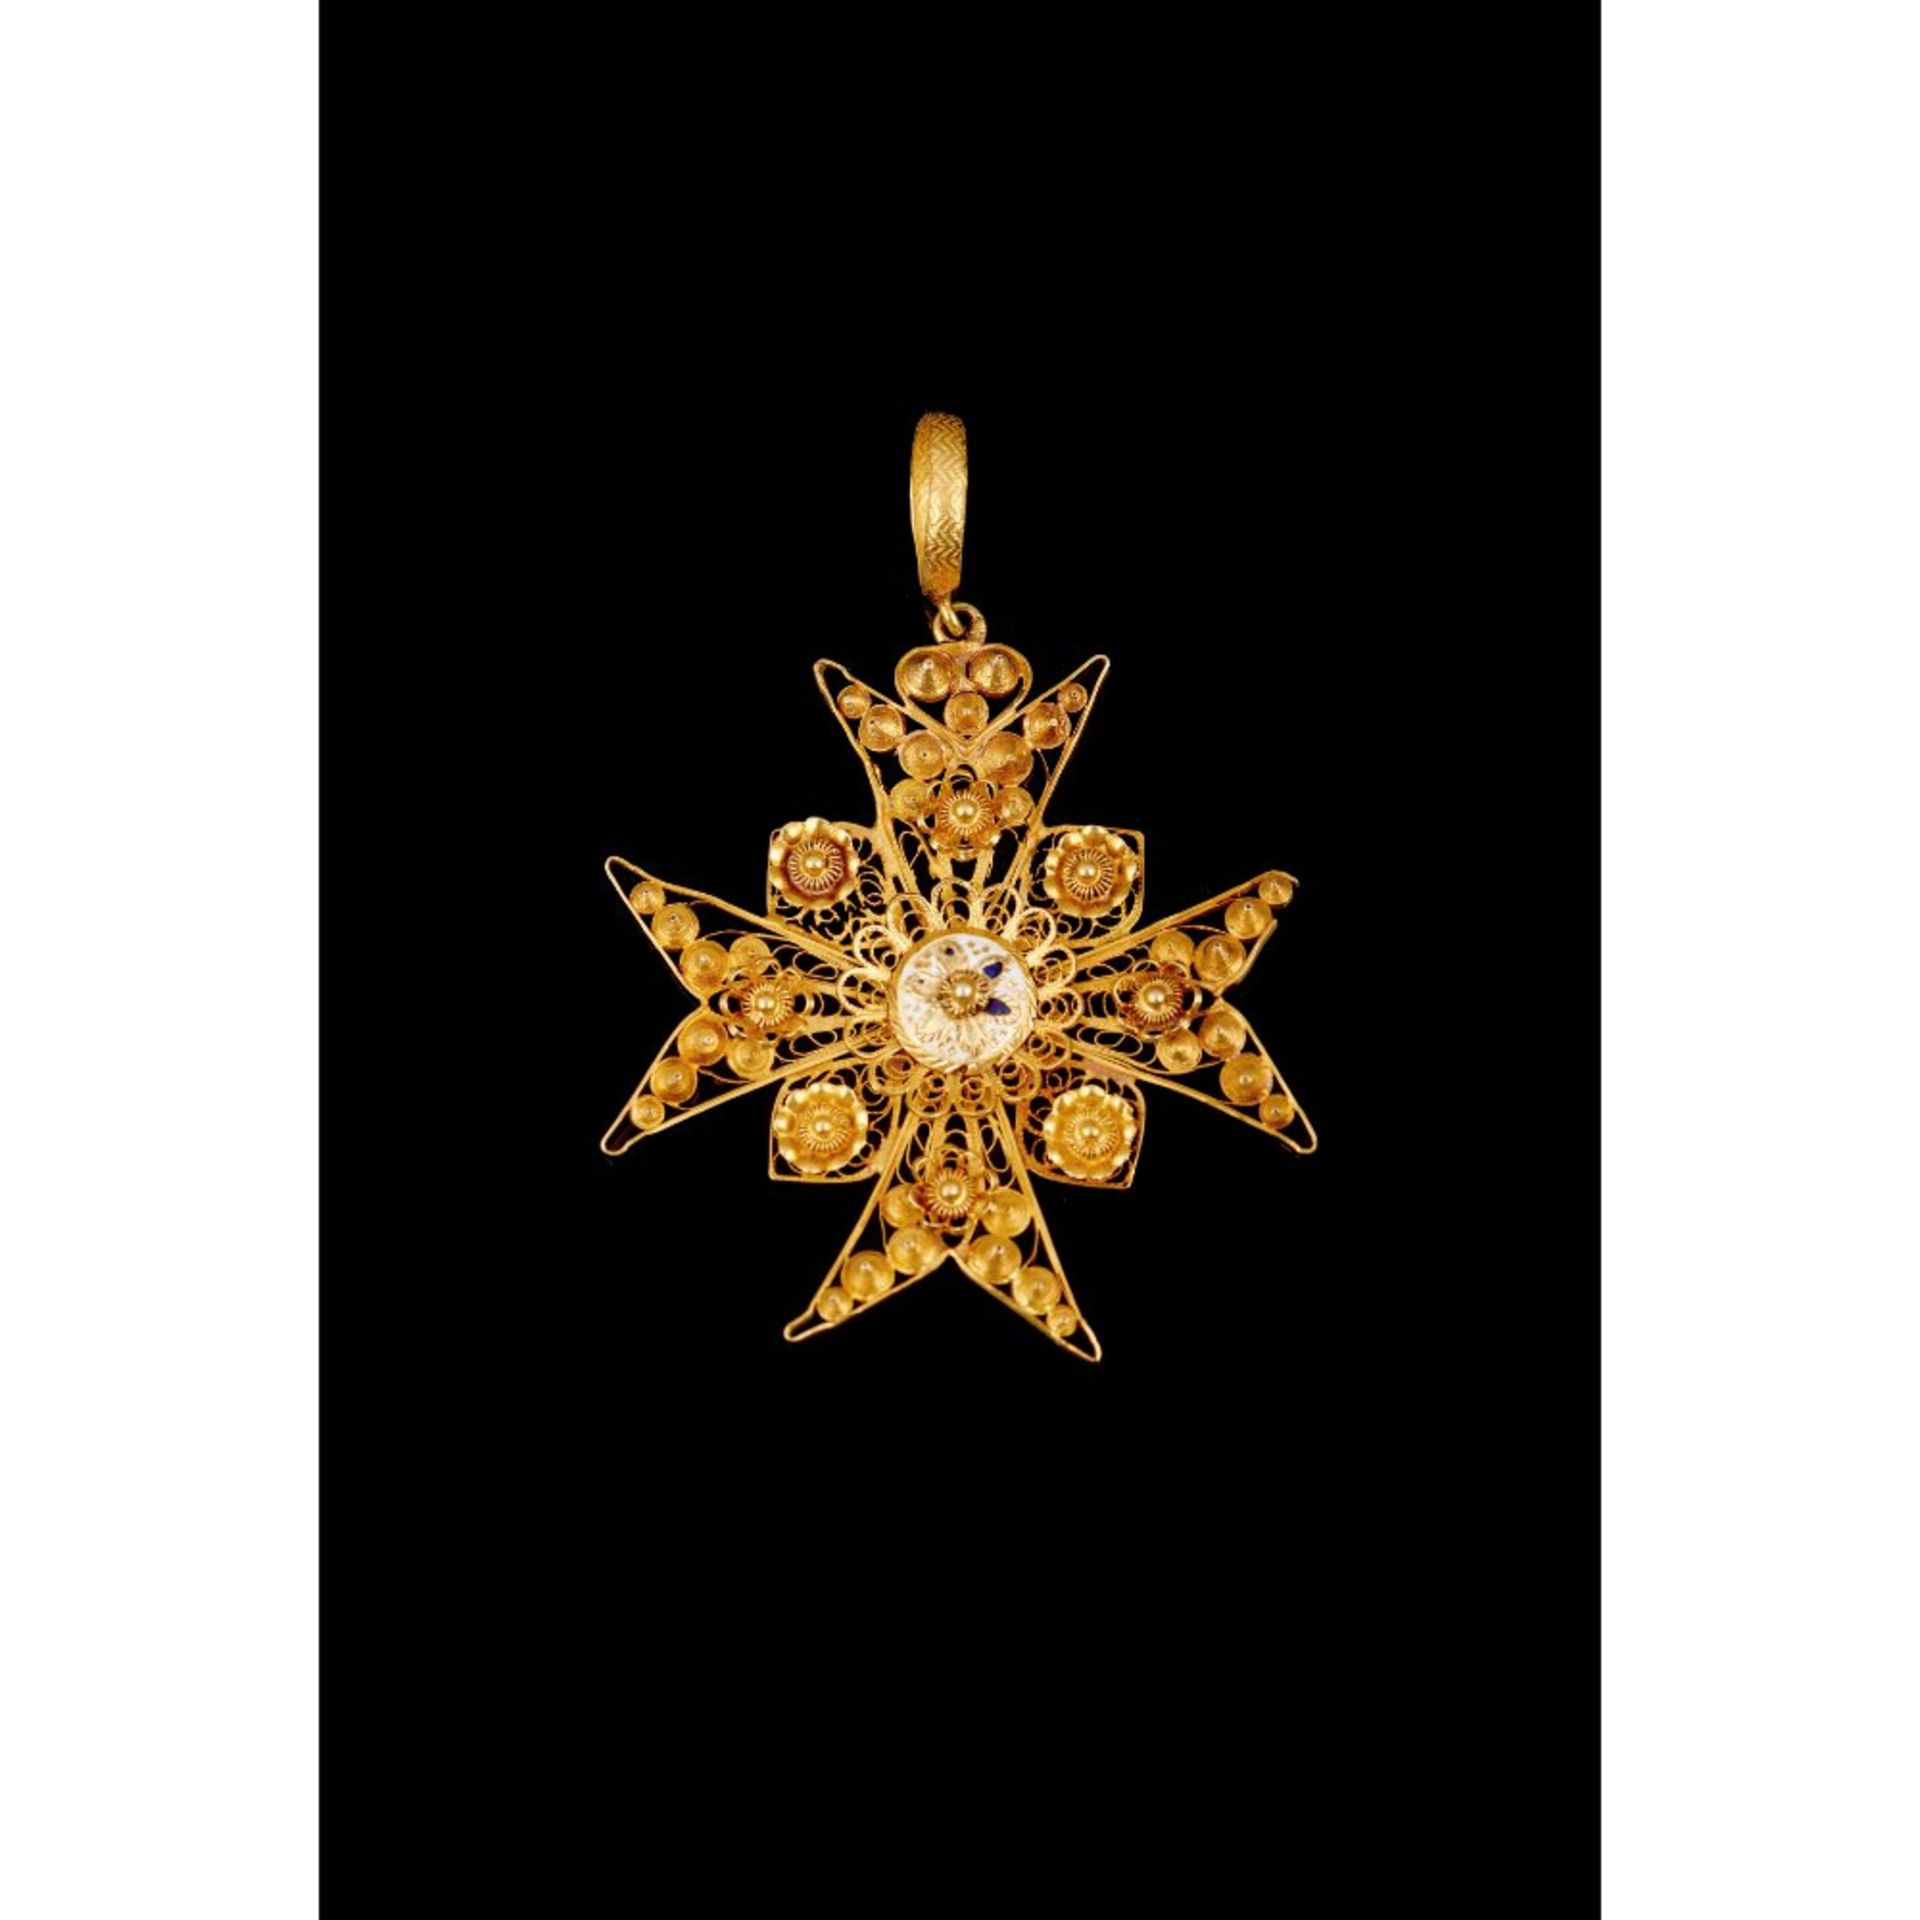 A Maltese cross pendant